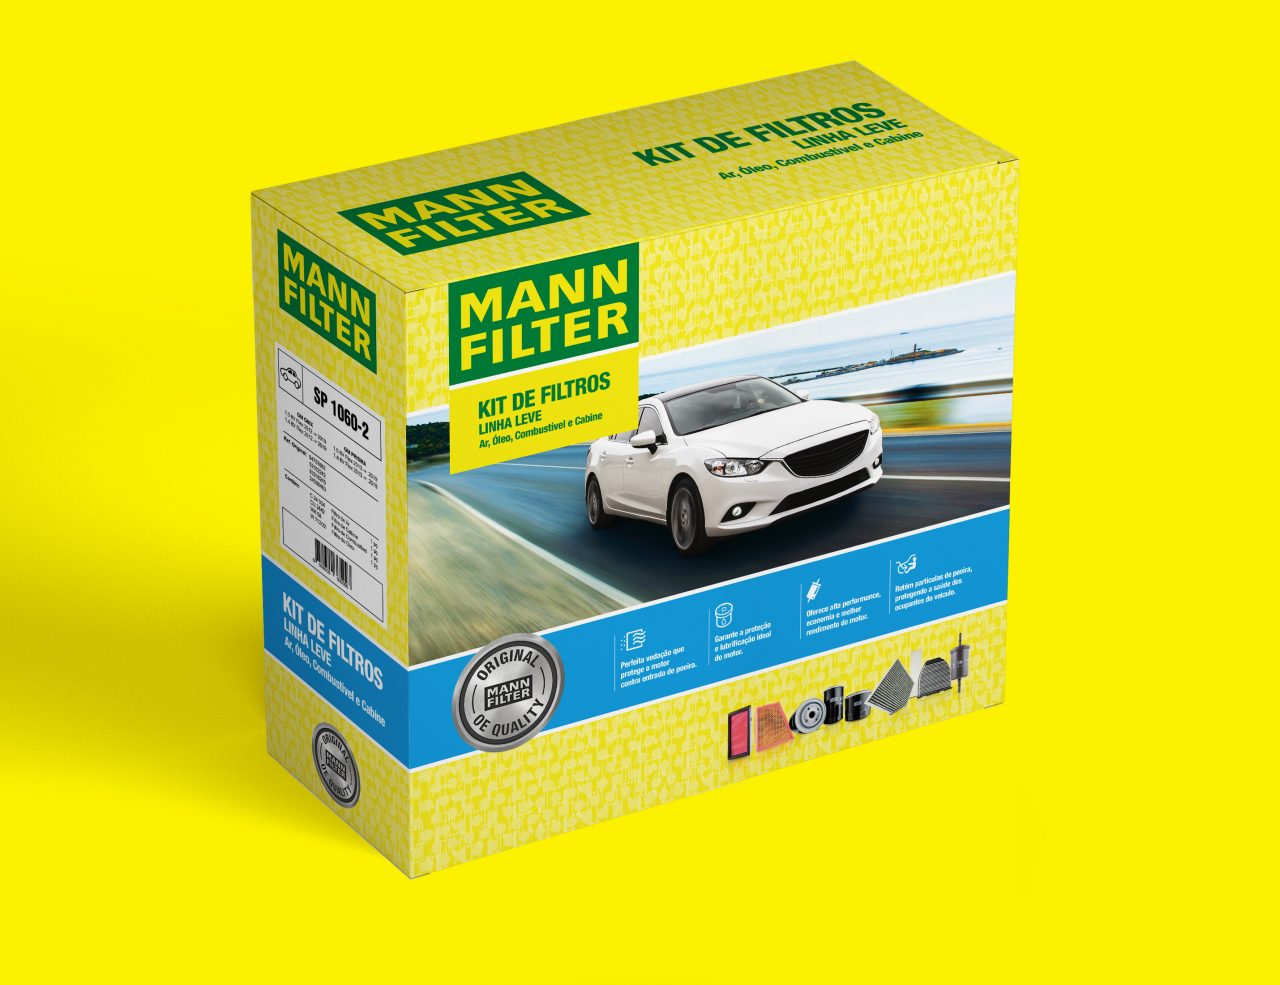 Kits MANN-FILTER: Melhor conveniência e proteção para seu veículo.